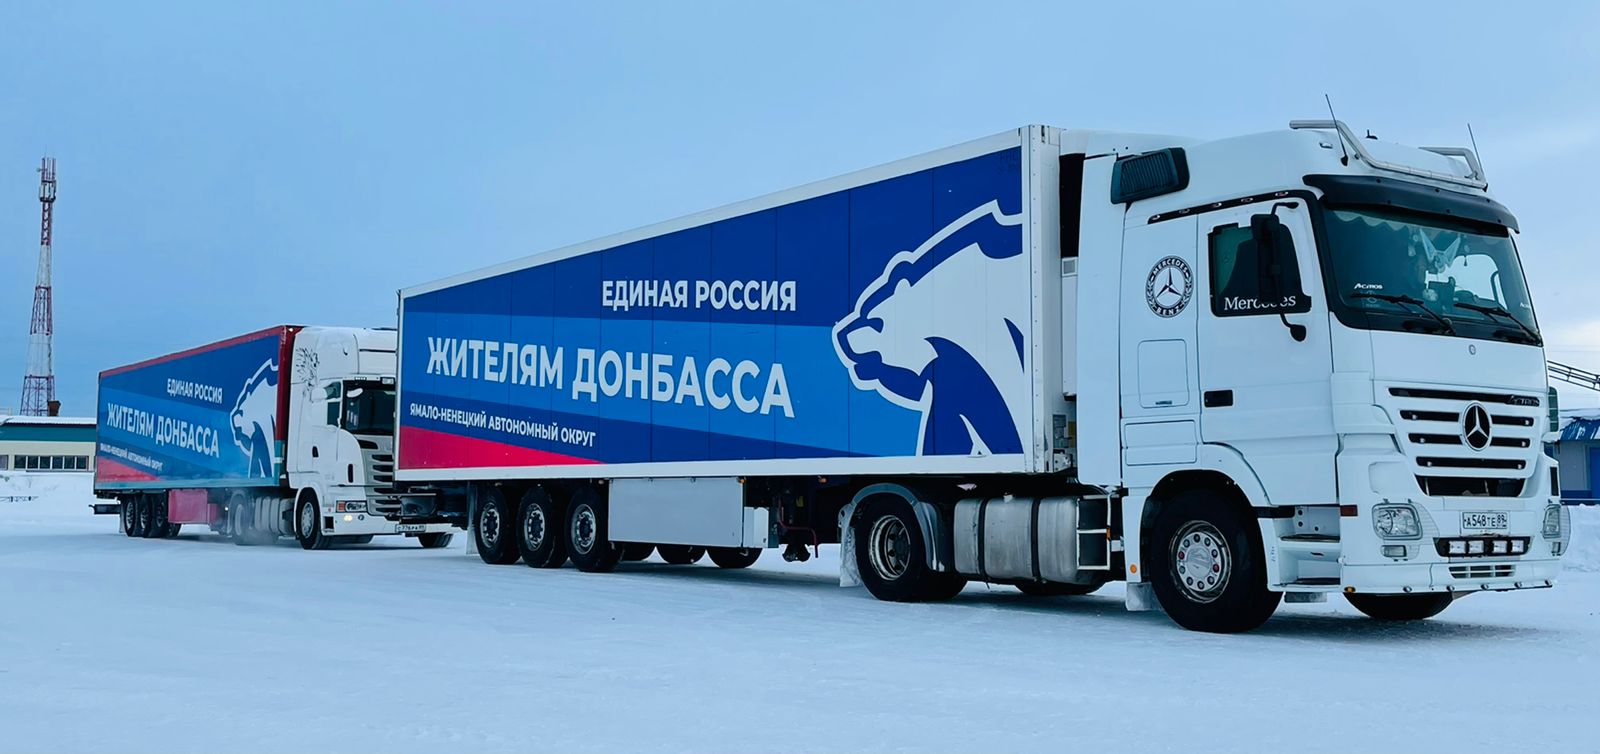 Гуманитарная помощь для эвакуированных жителей Донбасса. ЯНАО